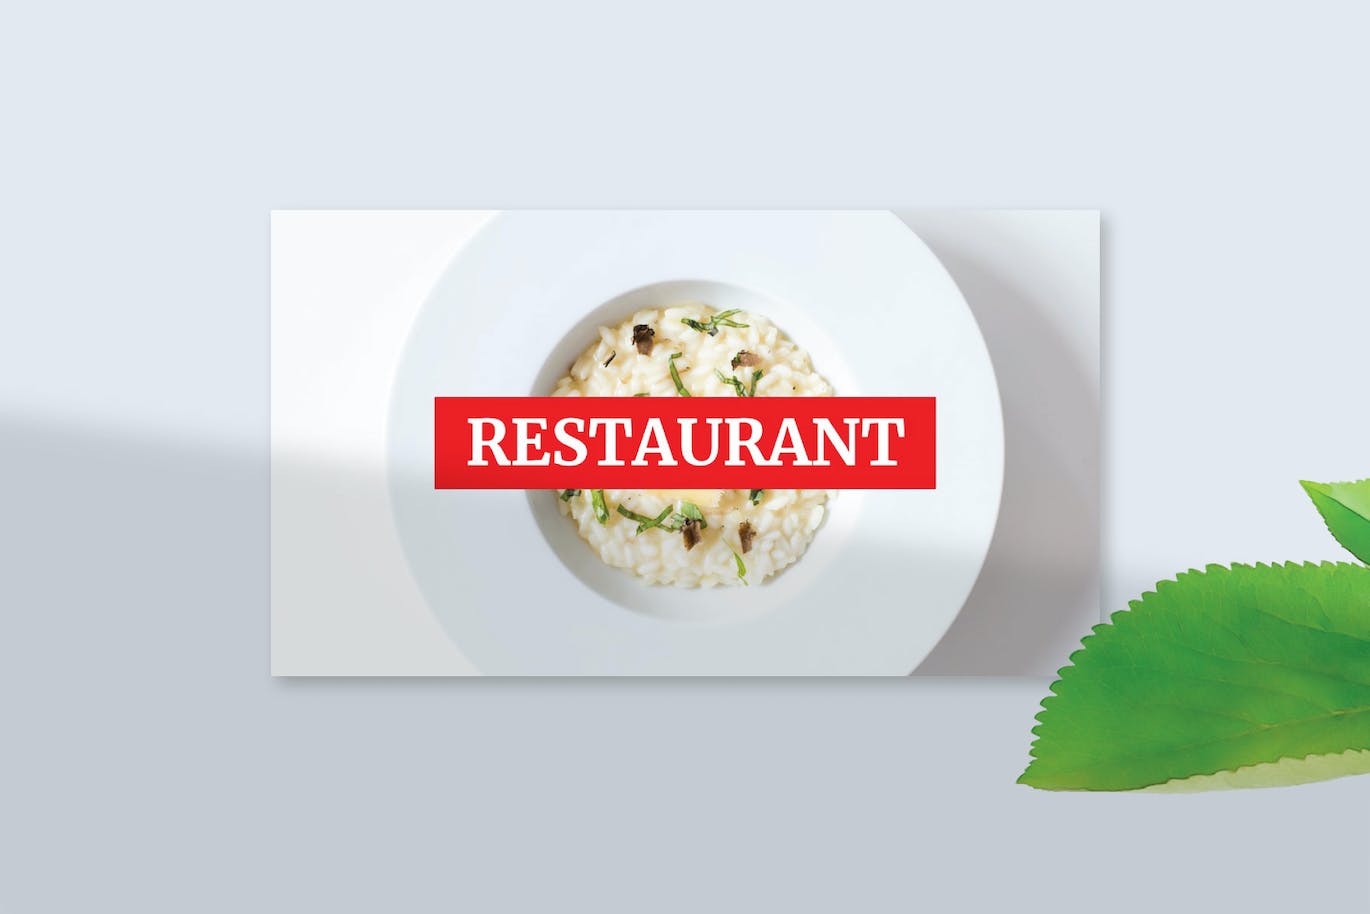 餐馆餐厅推广PPT幻灯片模板 Restaurant – PowerPoint Template 幻灯图表 第3张